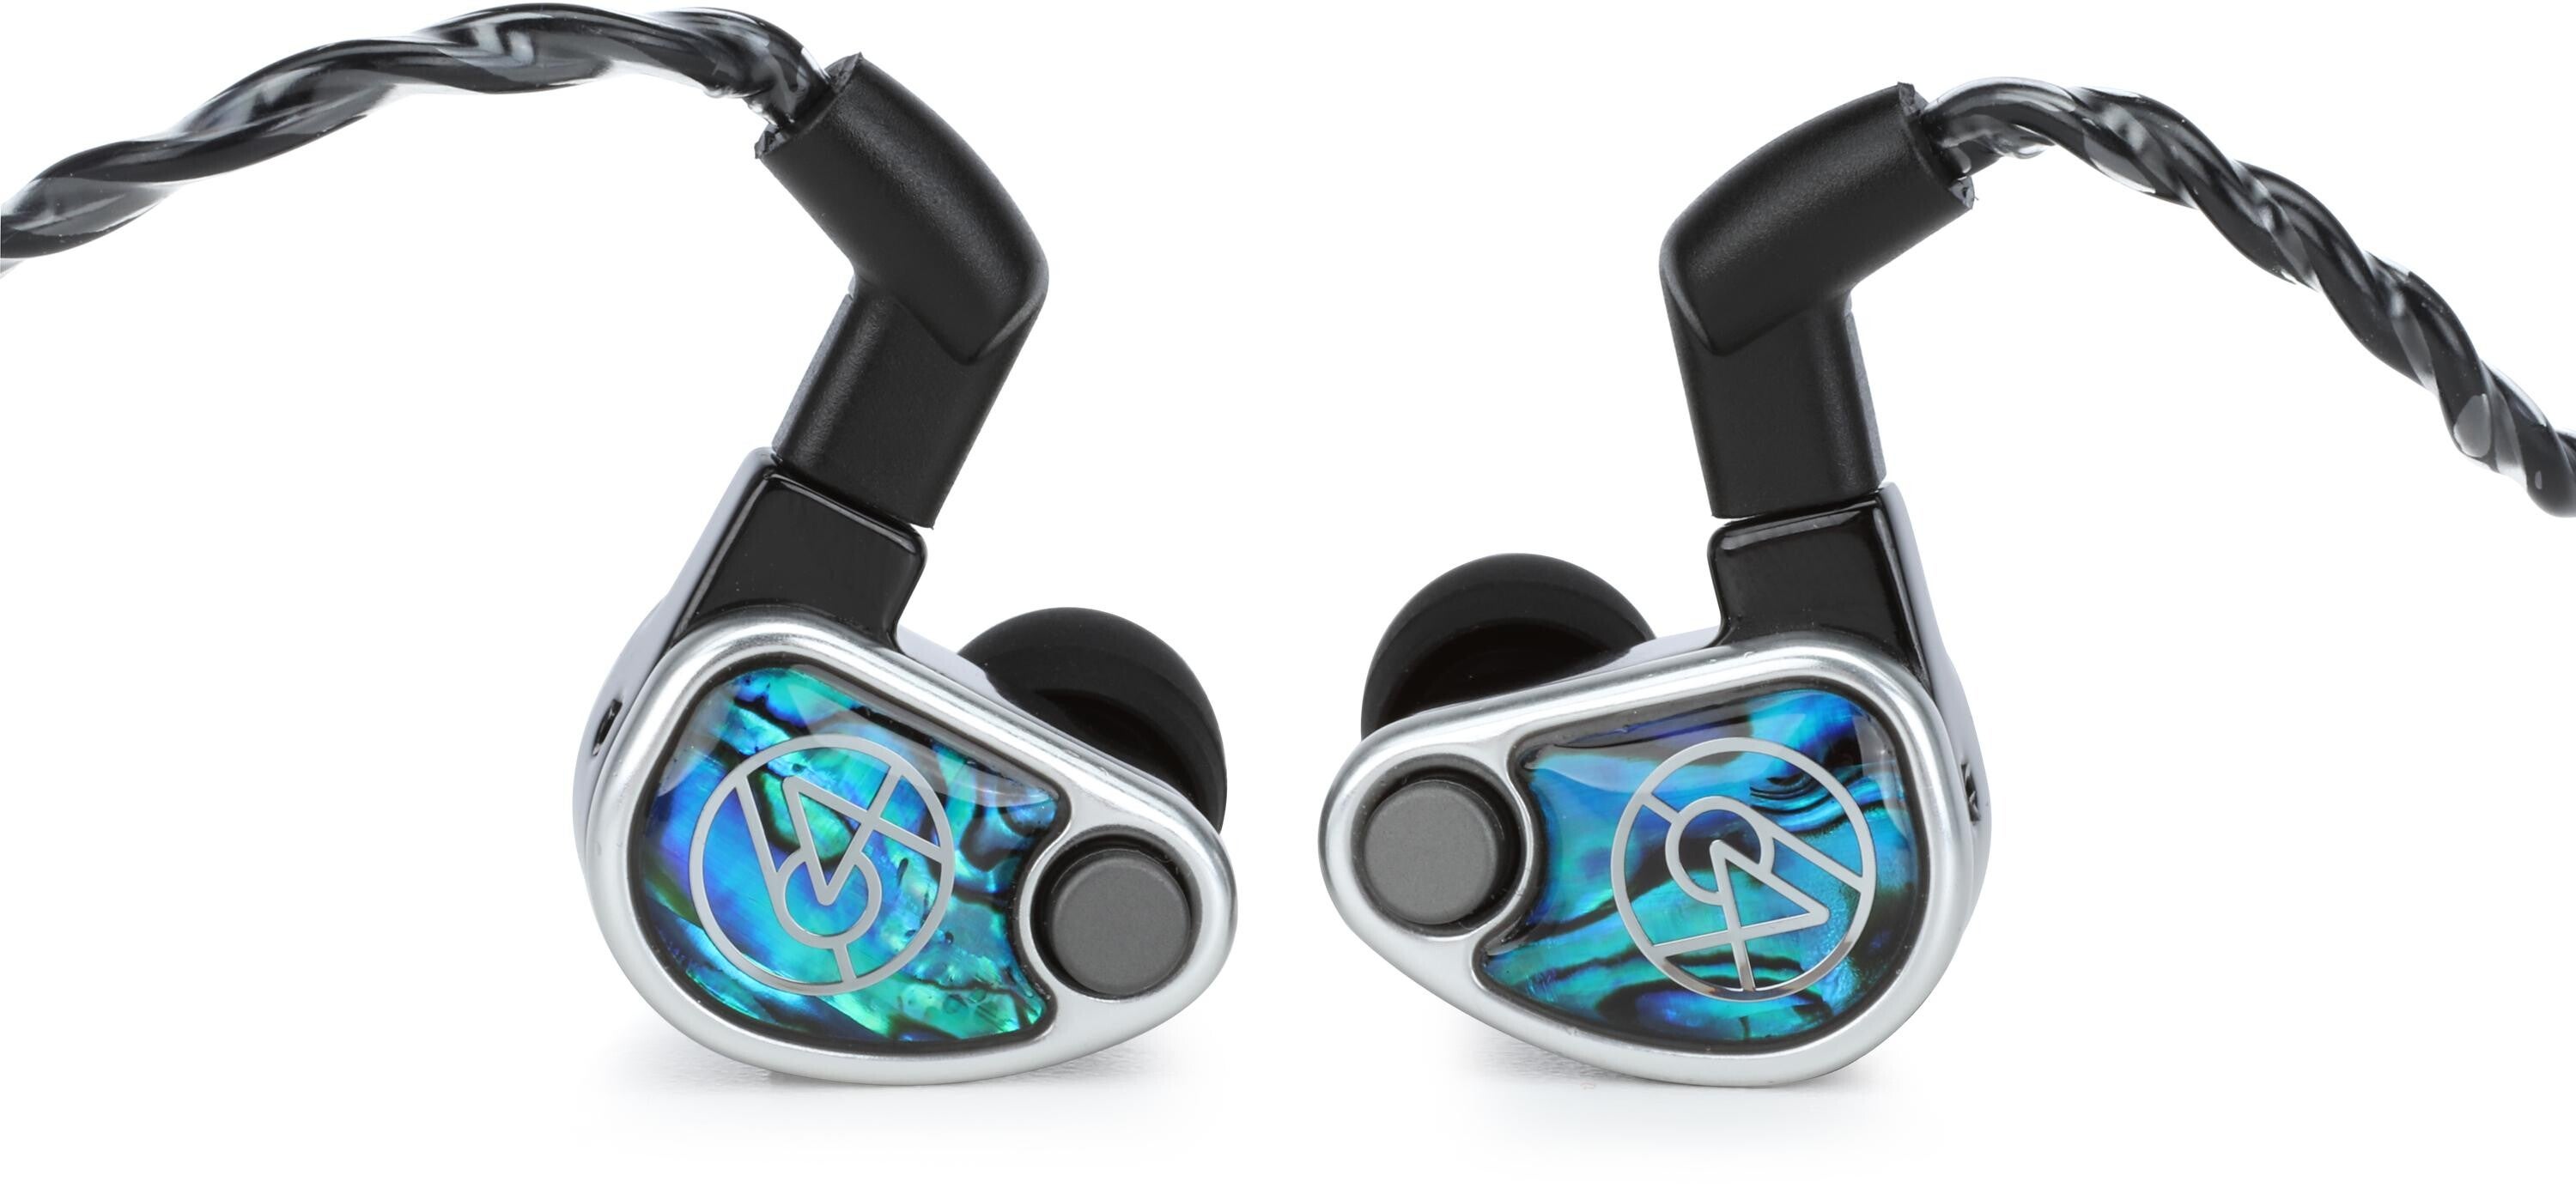 64 Audio Nio 9-driver Universal In-ear Monitors